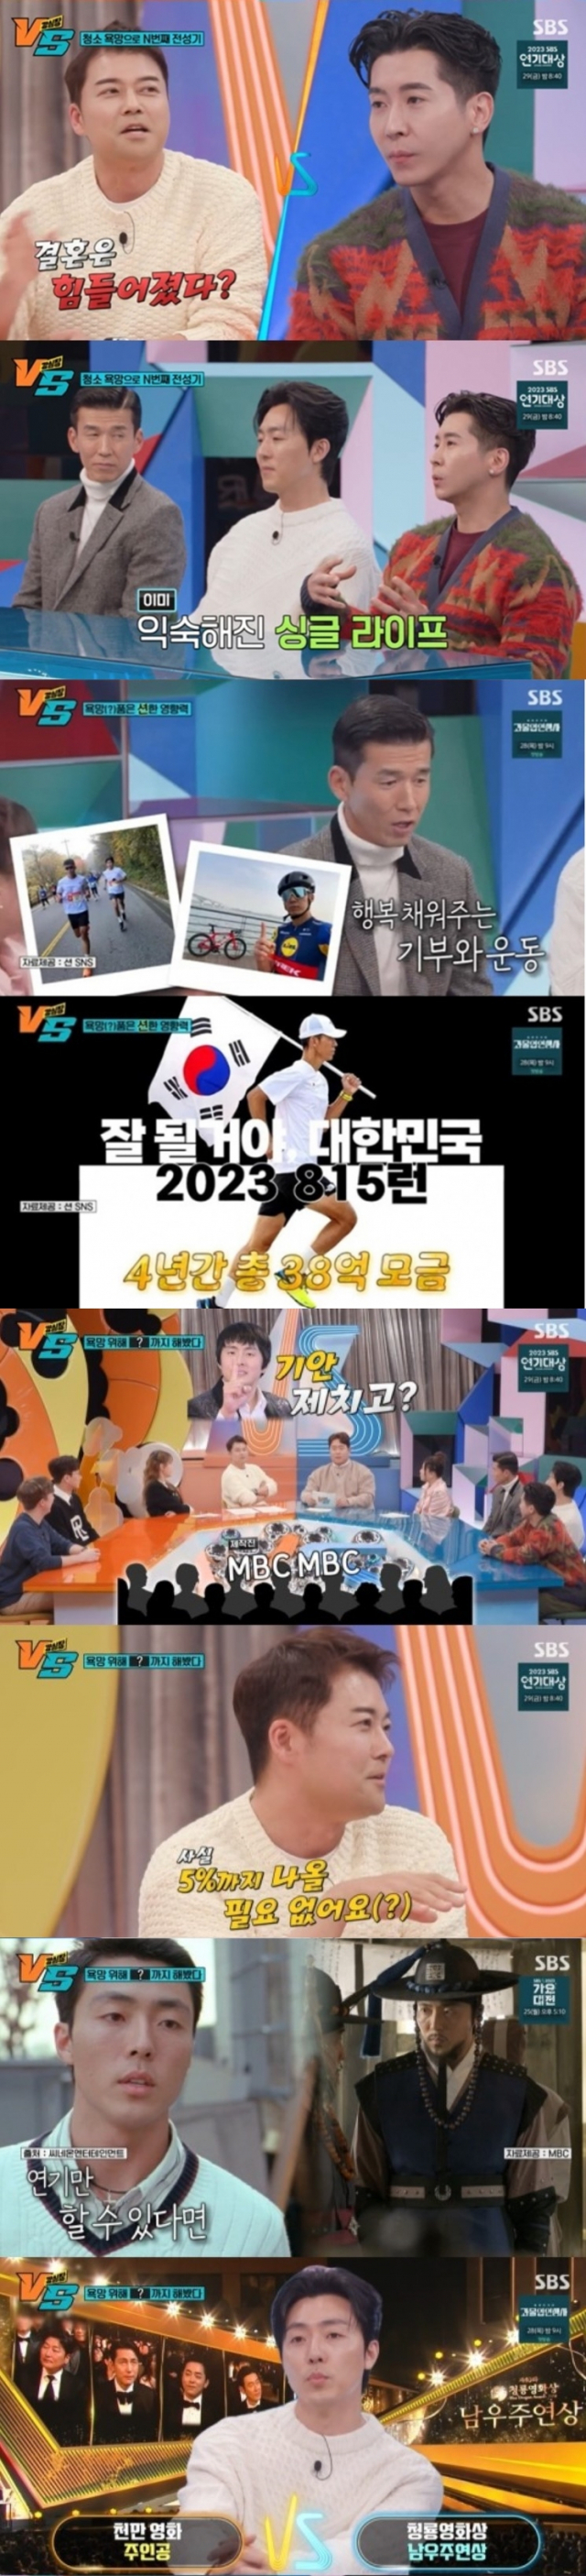 '강심장VS' 션 '누적 기부금 57억, 자금 출처는 공연·광고·강연'